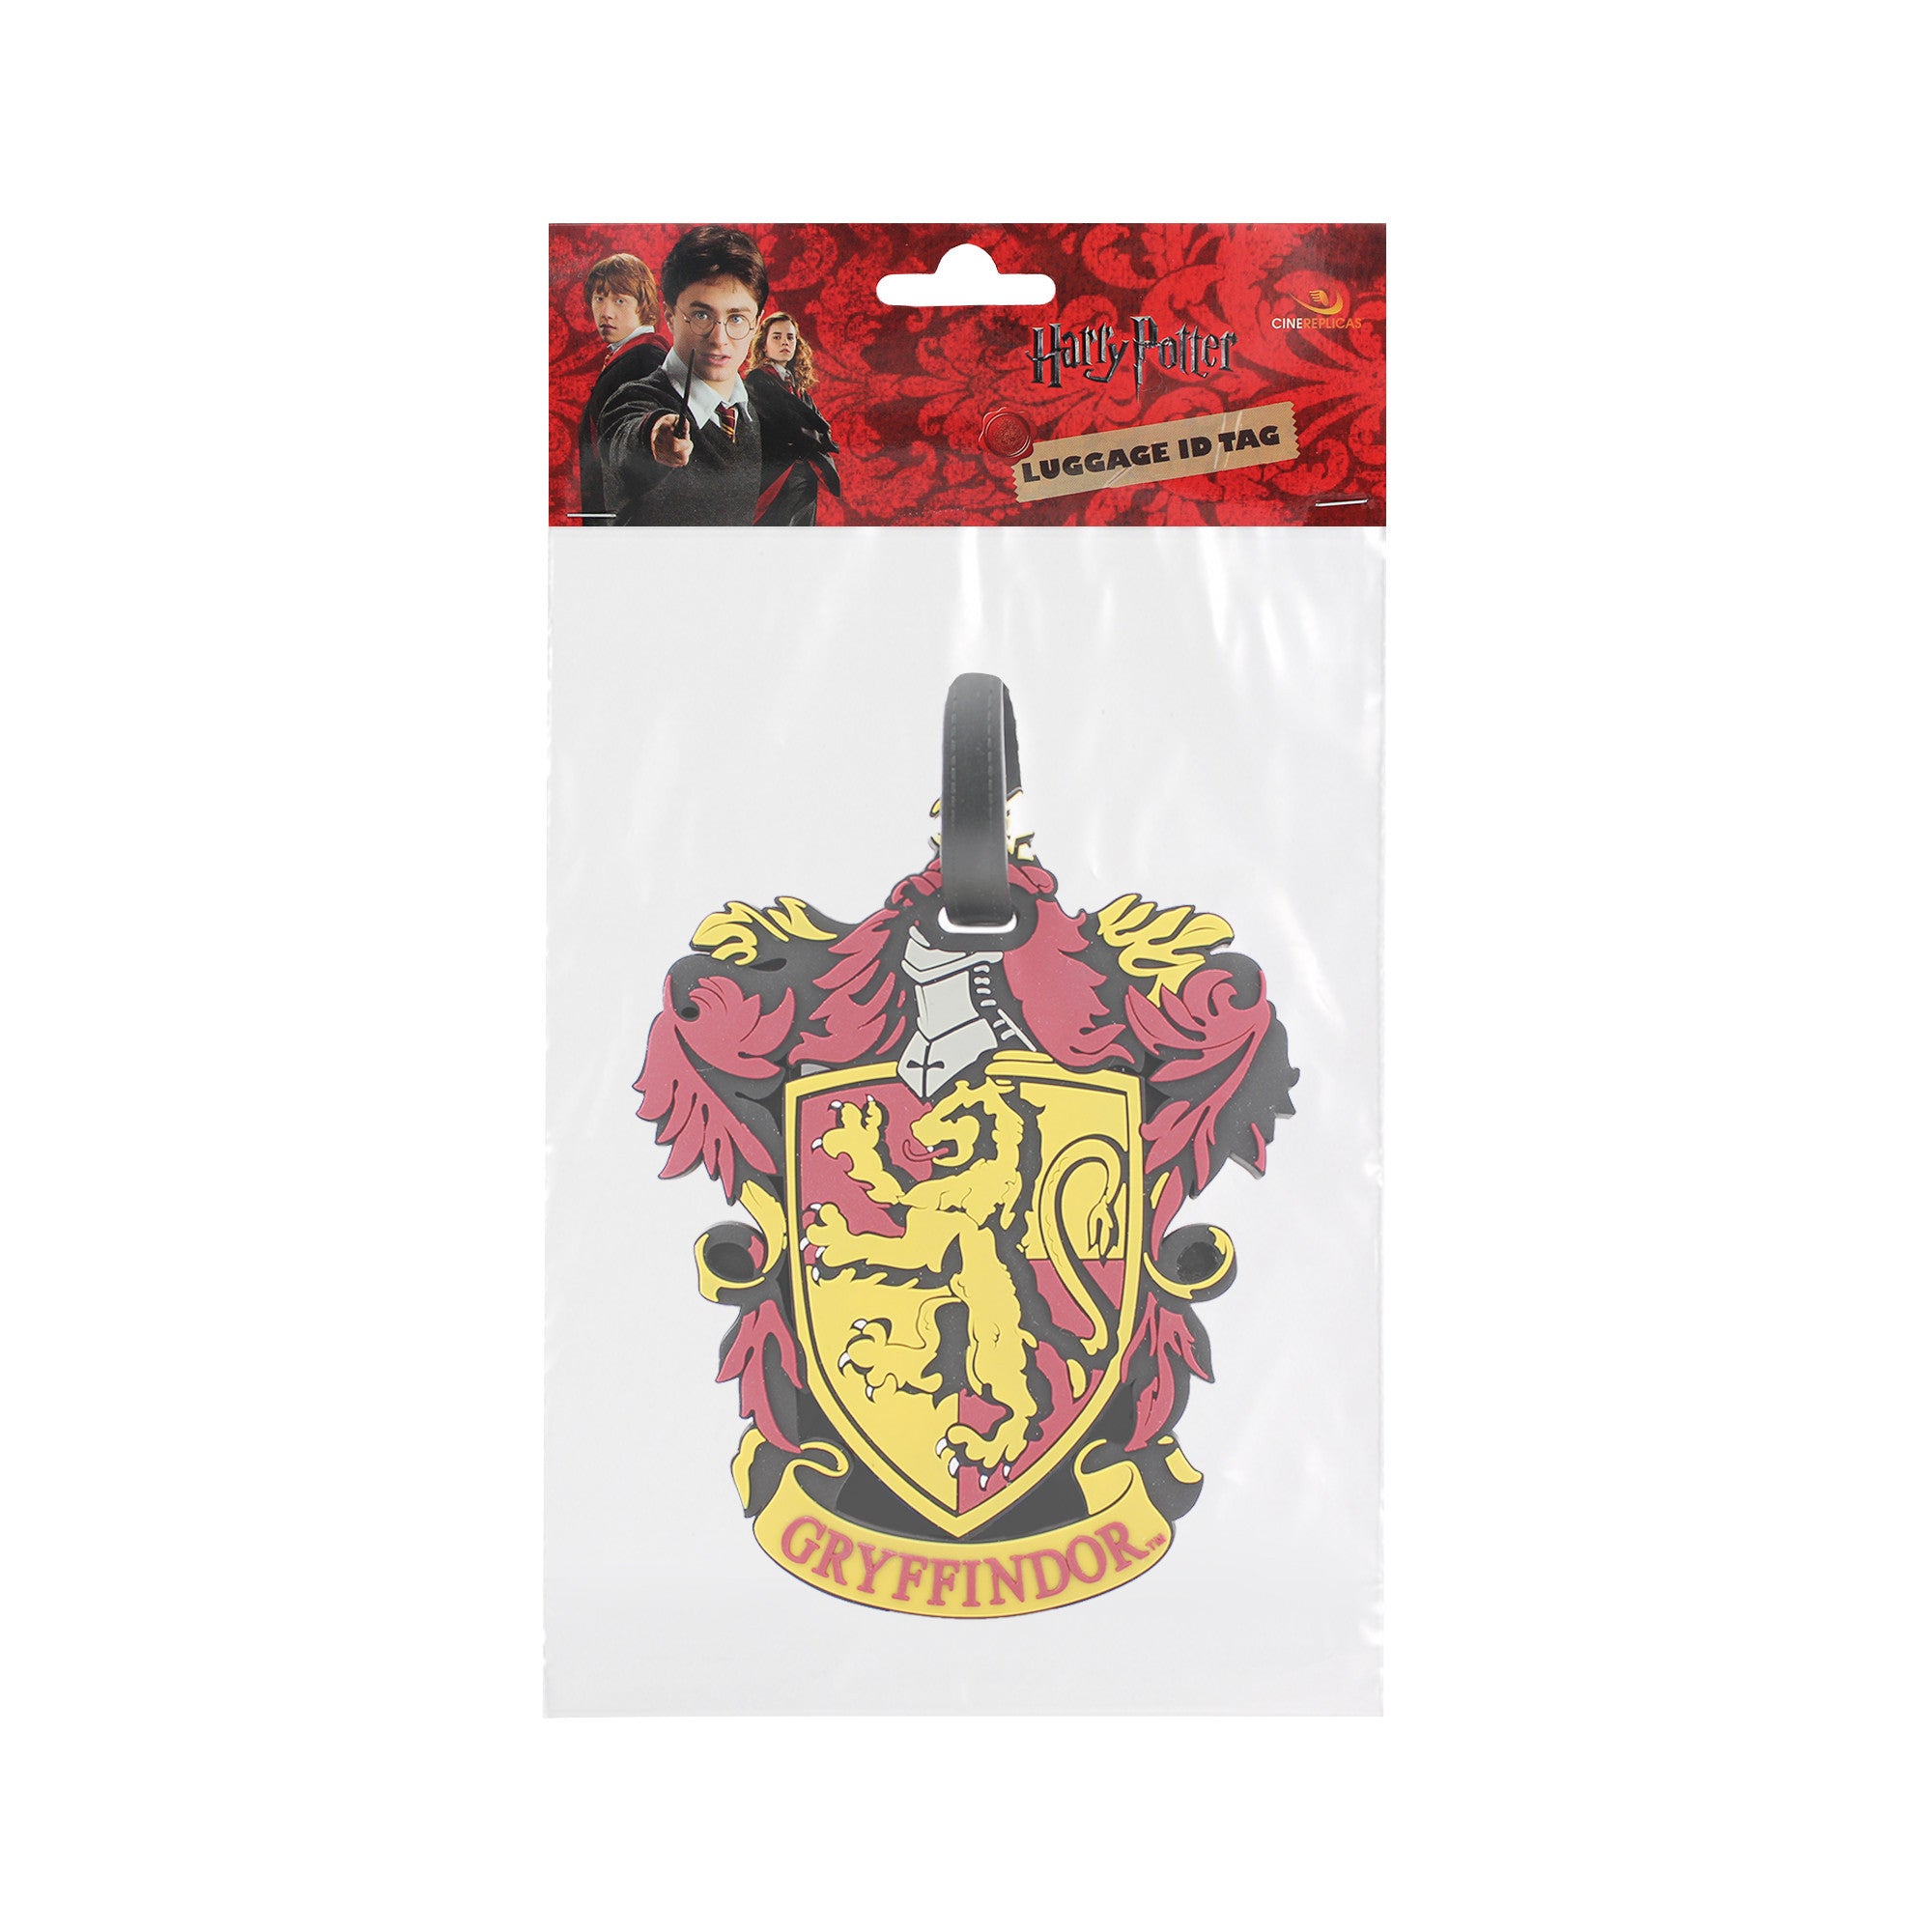 Cinereplicas Harry Potter - Water bottle Gryffindor - Official License